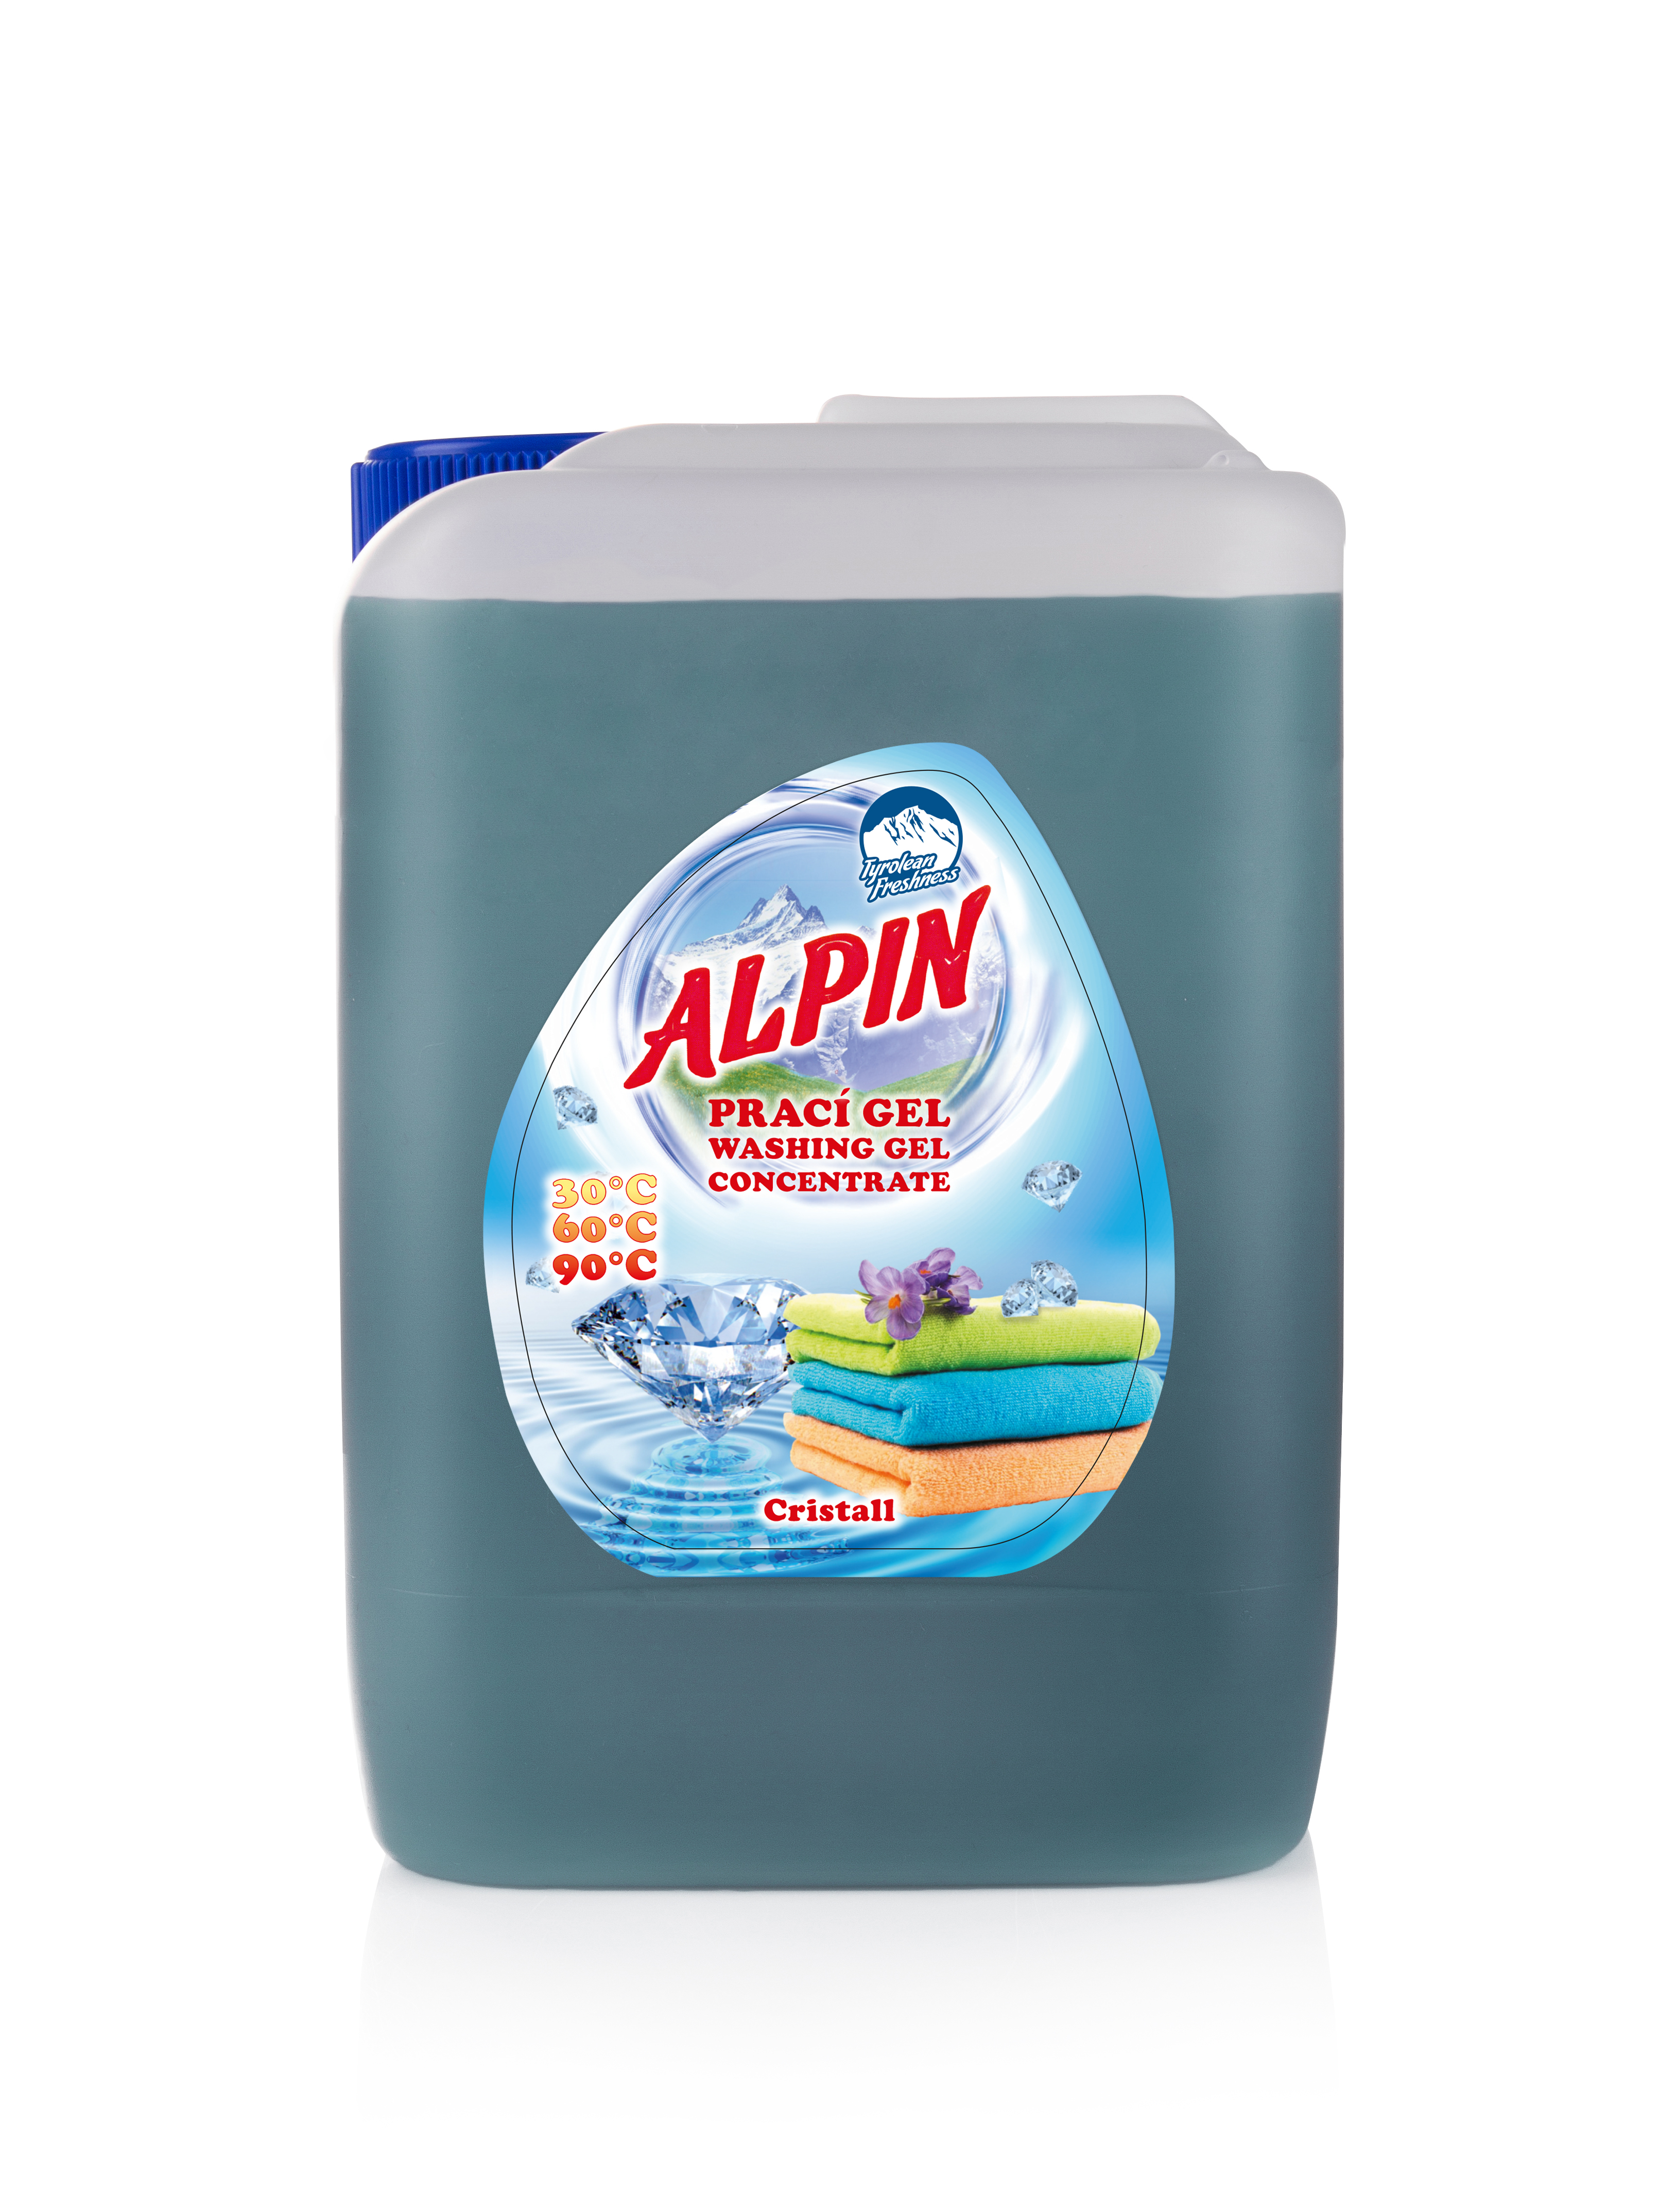 ALPIN Gel Cristall для белья с жирными пятнами (Гель для стирки Кристал) 5л